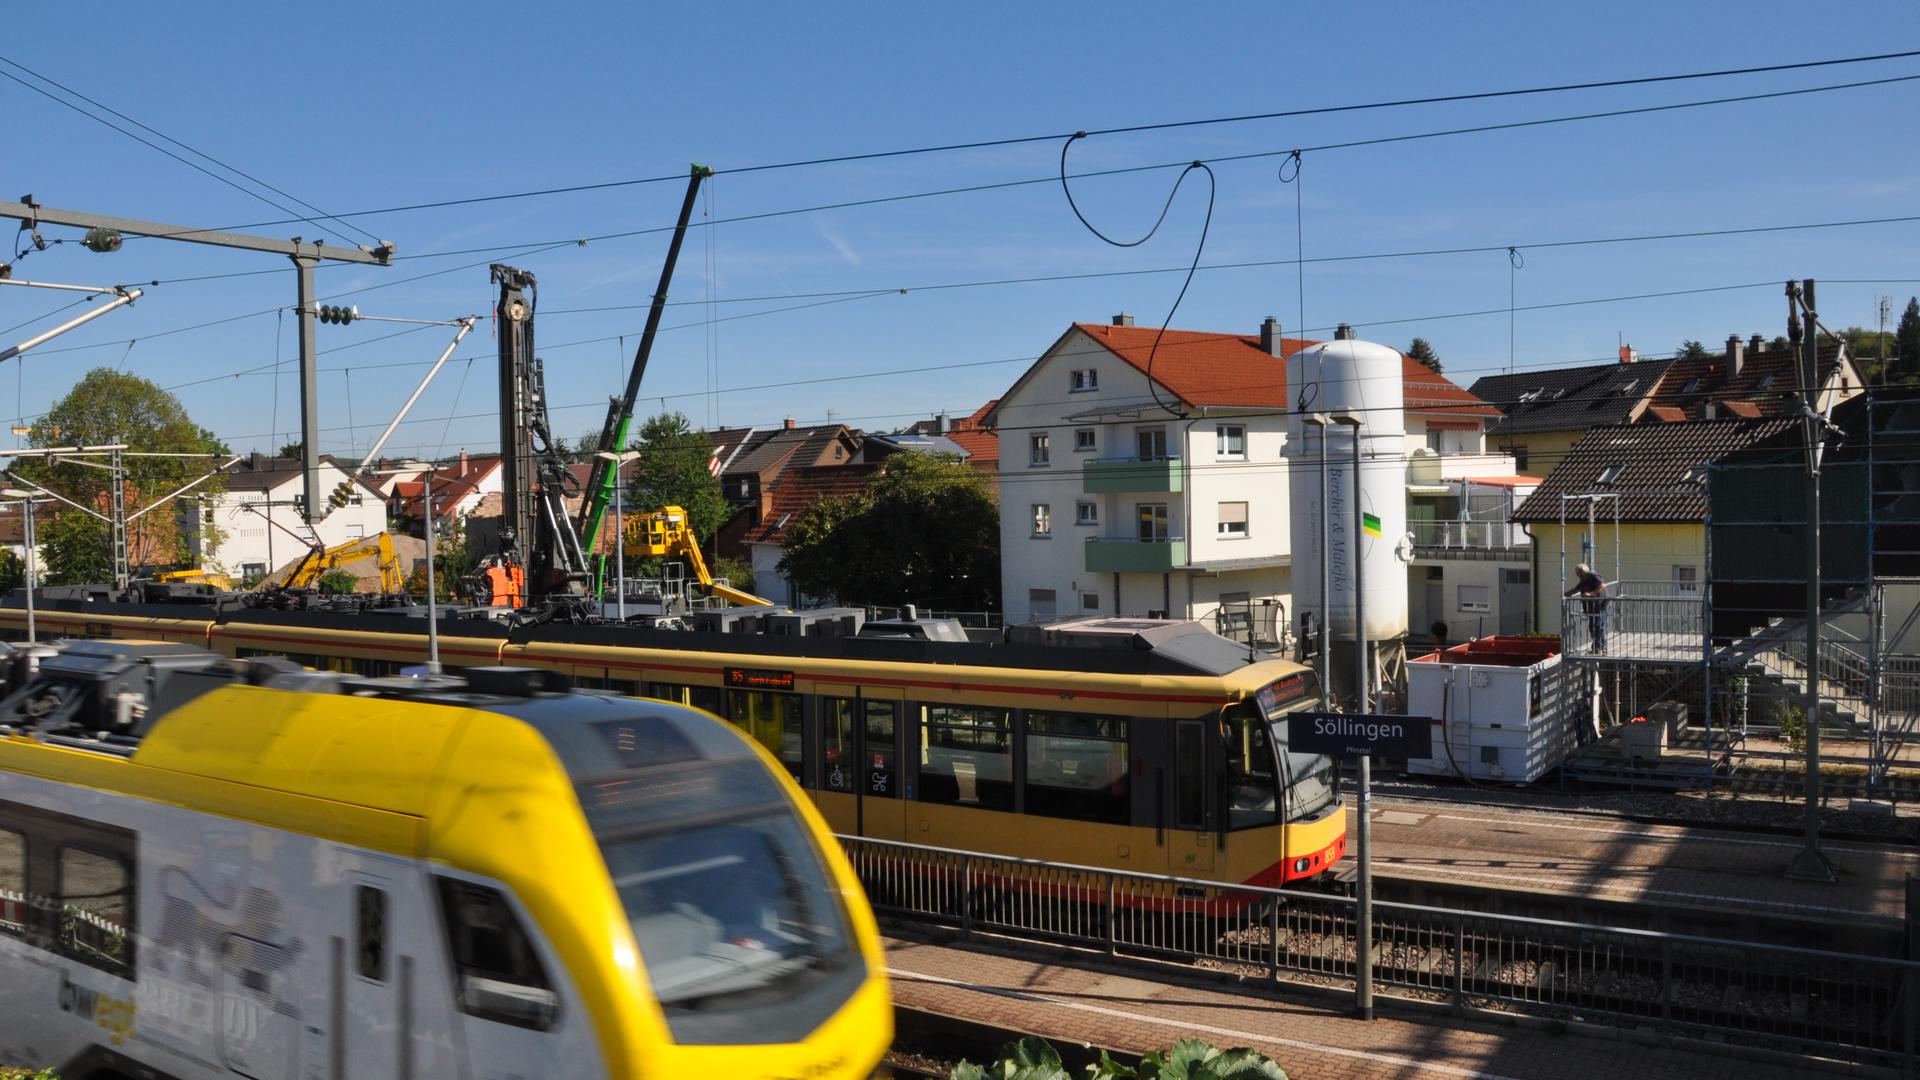 Draufsicht auf die Baustelle am Bahnhof Söllingen.